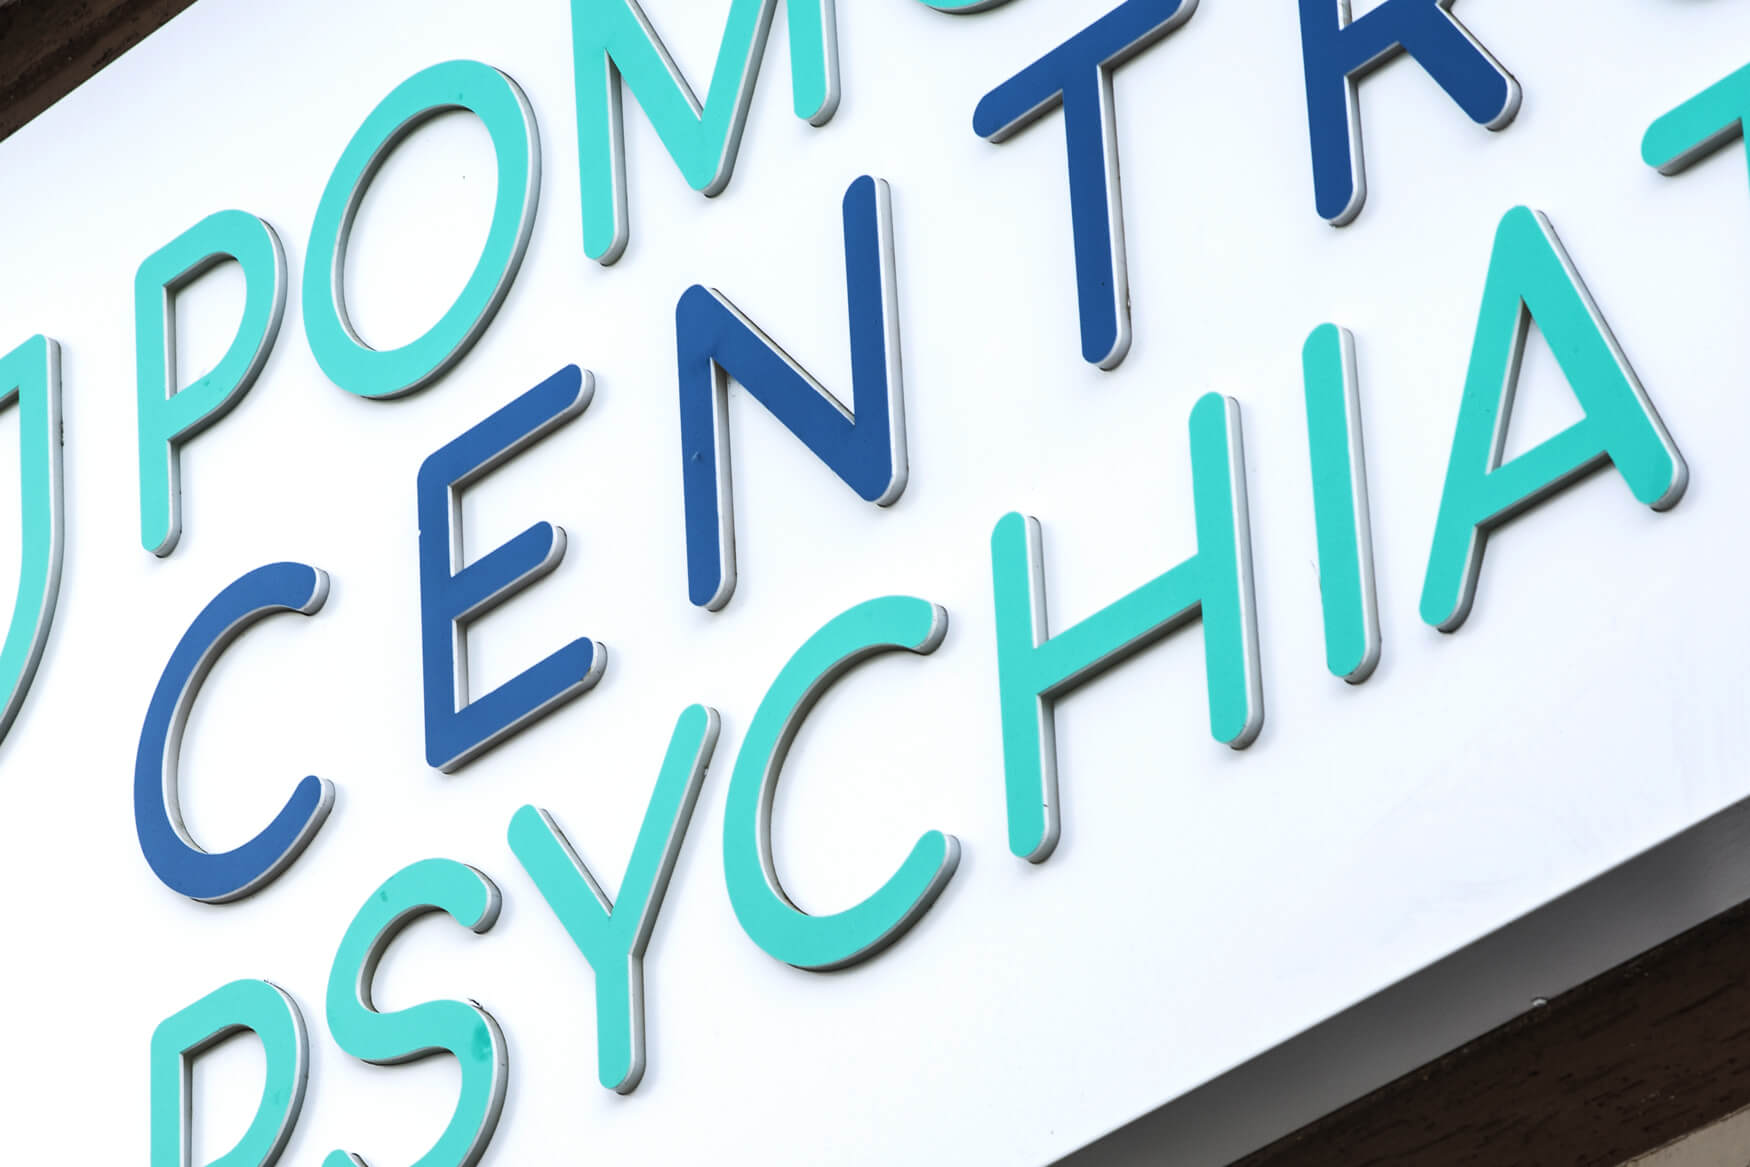 pomorscie centrum psychiatri - Pomorskie Centrum Psychiatrii - świetlny kaseton reklamowy z dibondu umieszczony nad wejściem